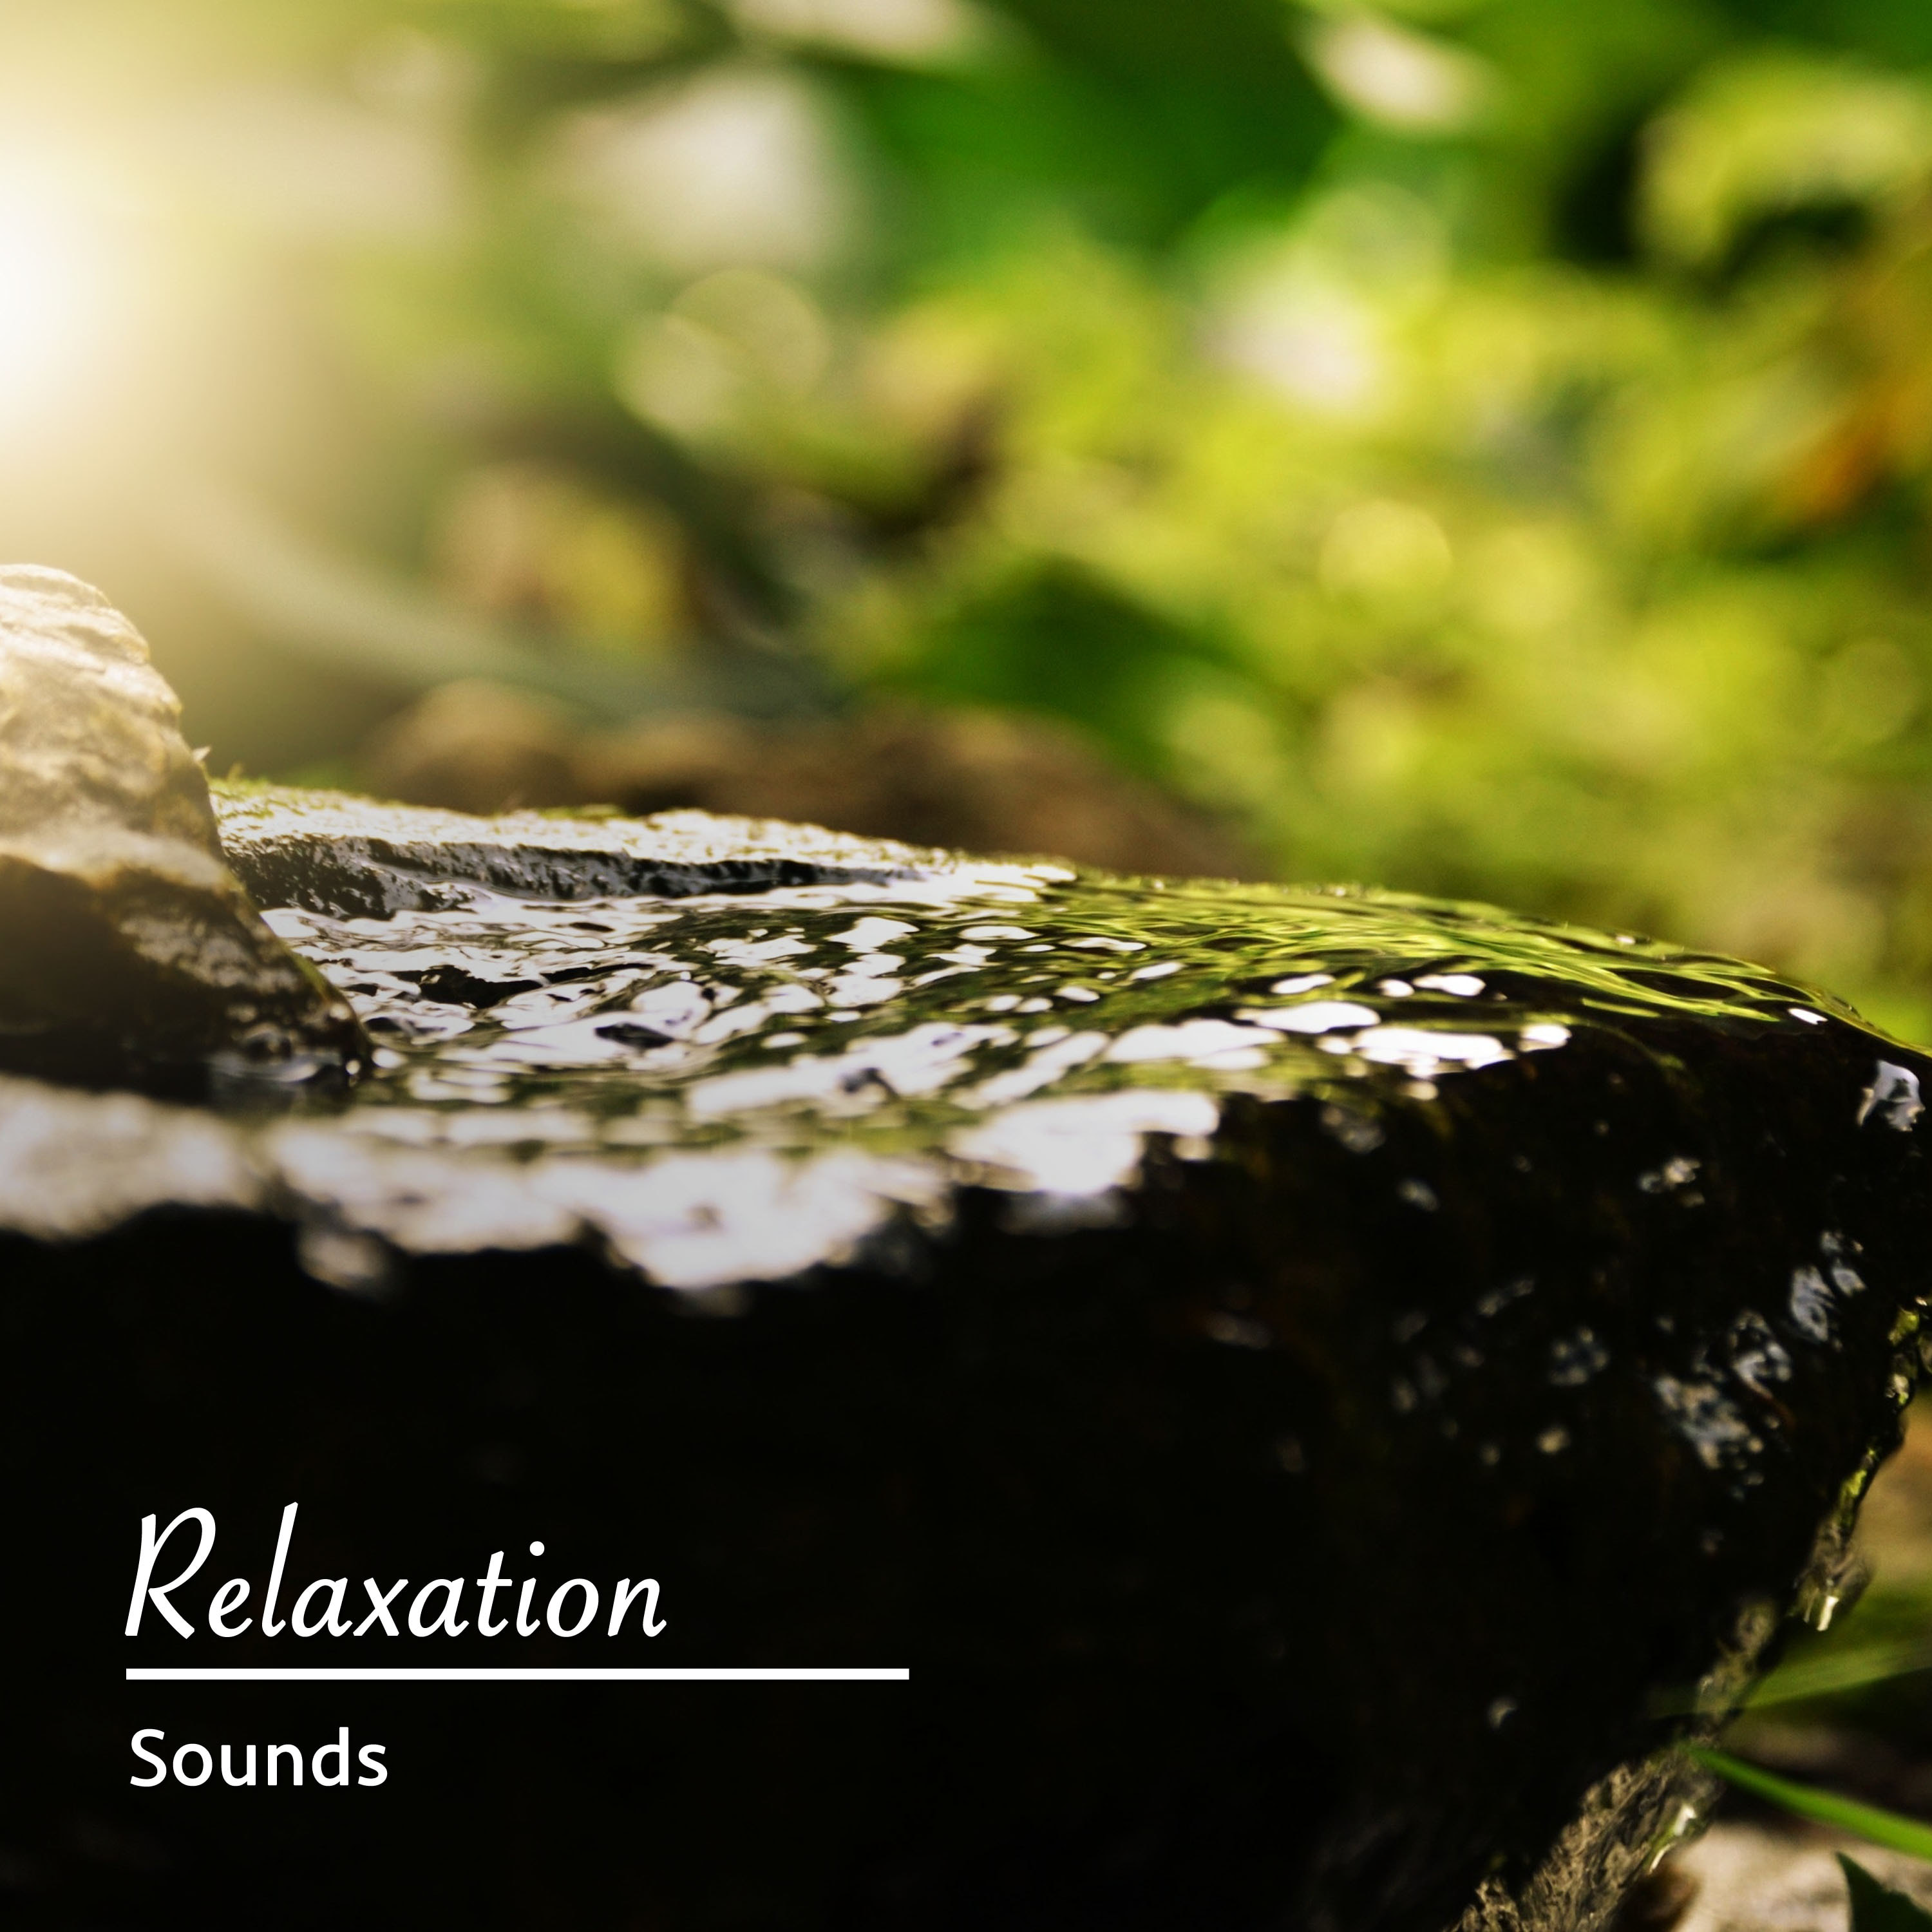 17 sons de relaxamento para a paz interior